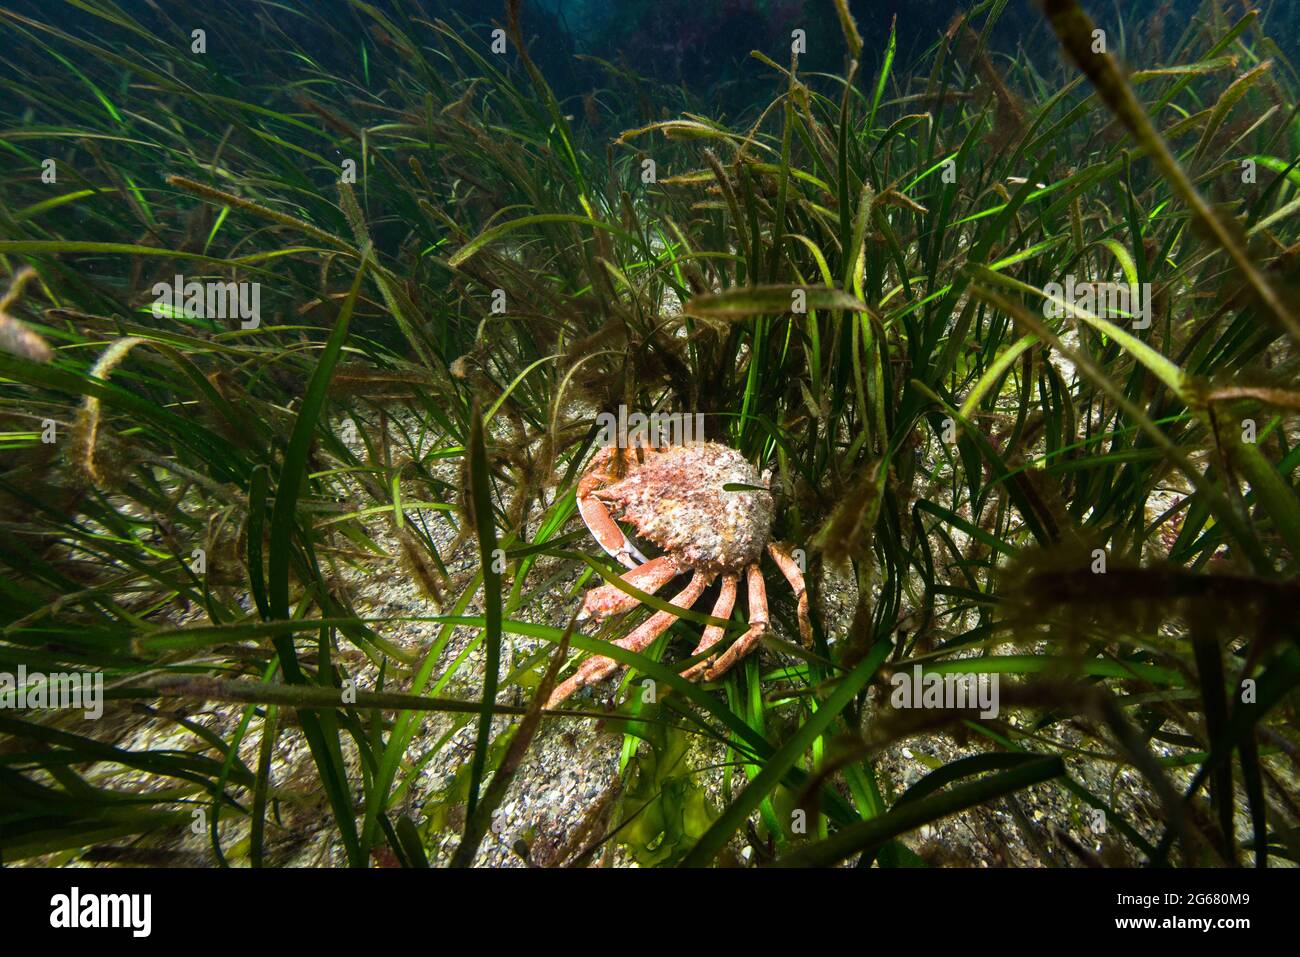 Crabe araignée européen dans la prairie d'herbes marines. Îles Anglo-Normandes, Royaume-Uni. Banque D'Images